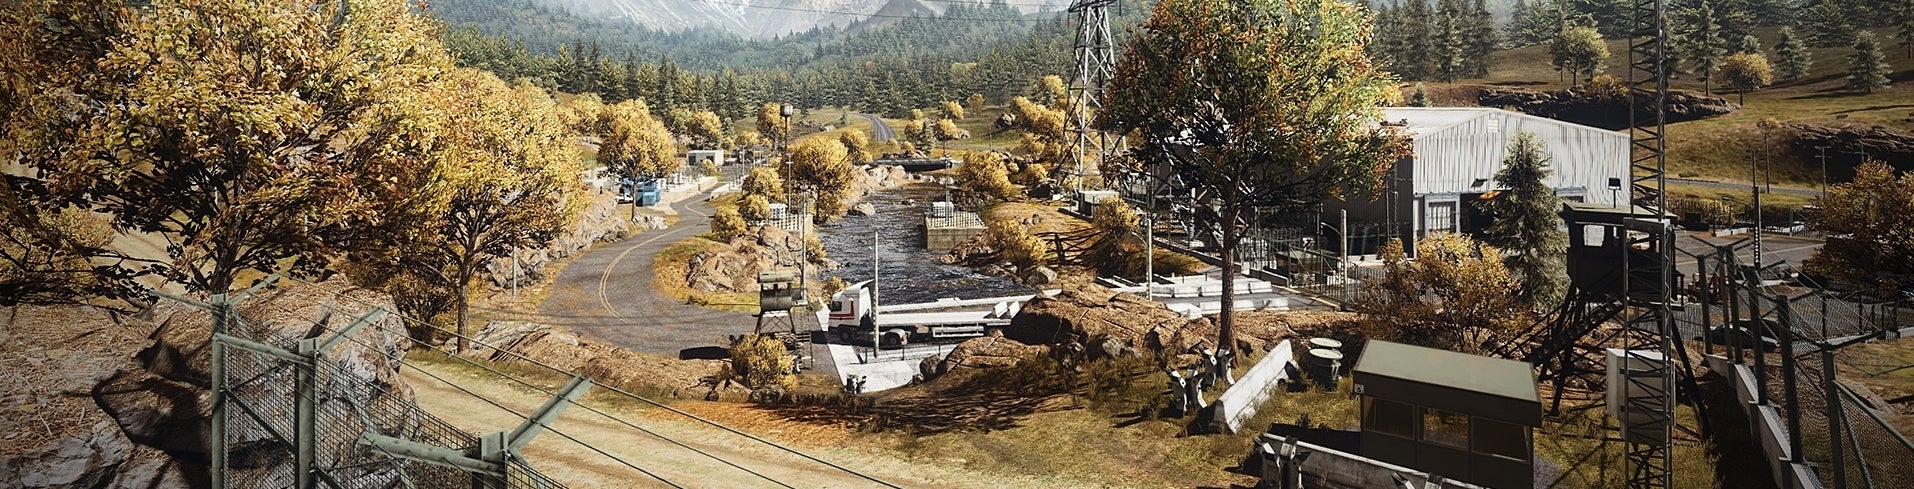 Obrazki dla Battlefield 3: Decydujące starcie DLC - Recenzja